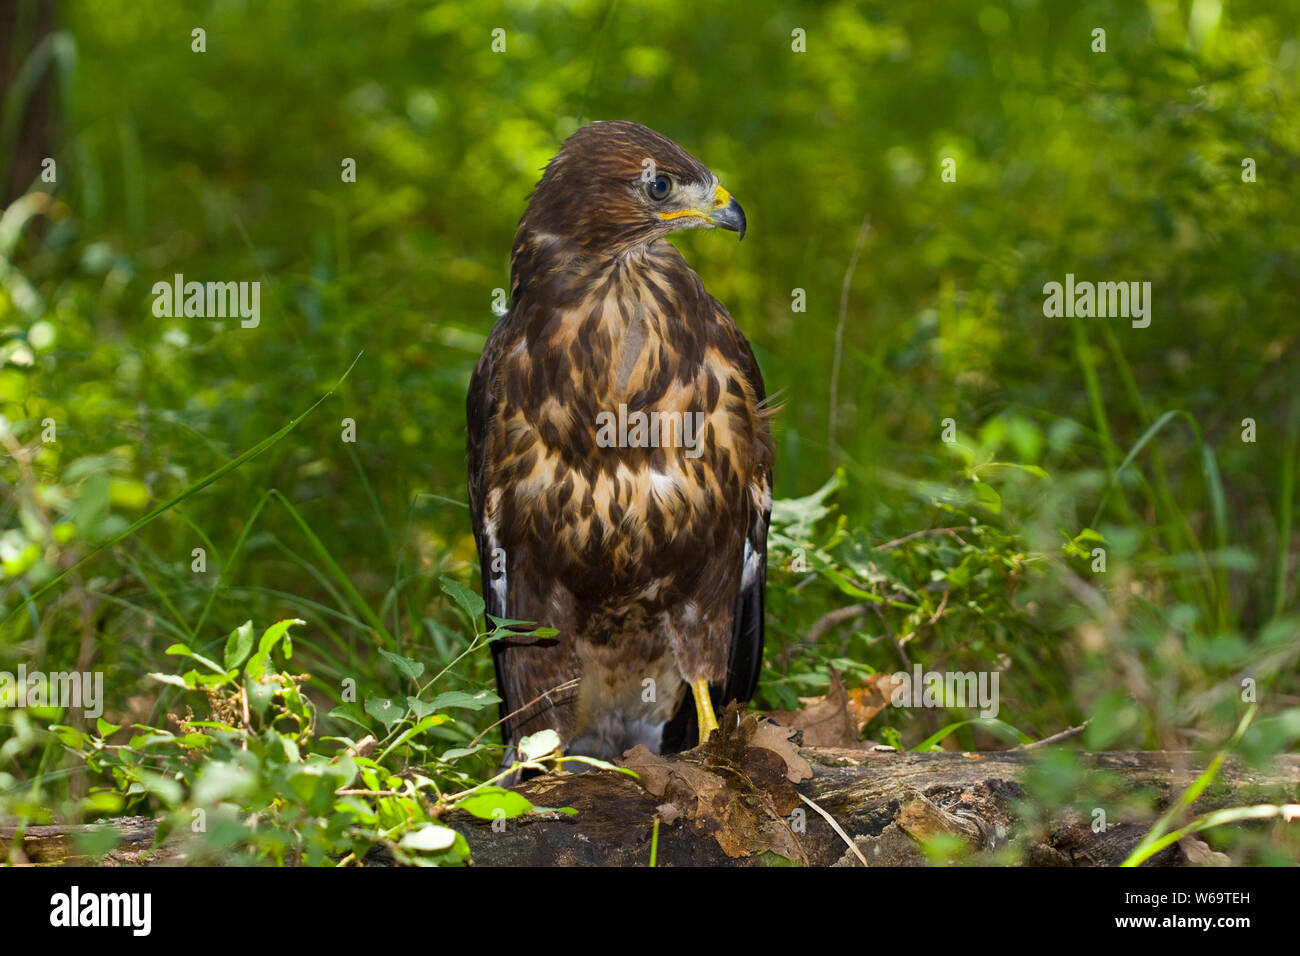 Buzzard Bird / Eagle - Accipitridae Stock Photo